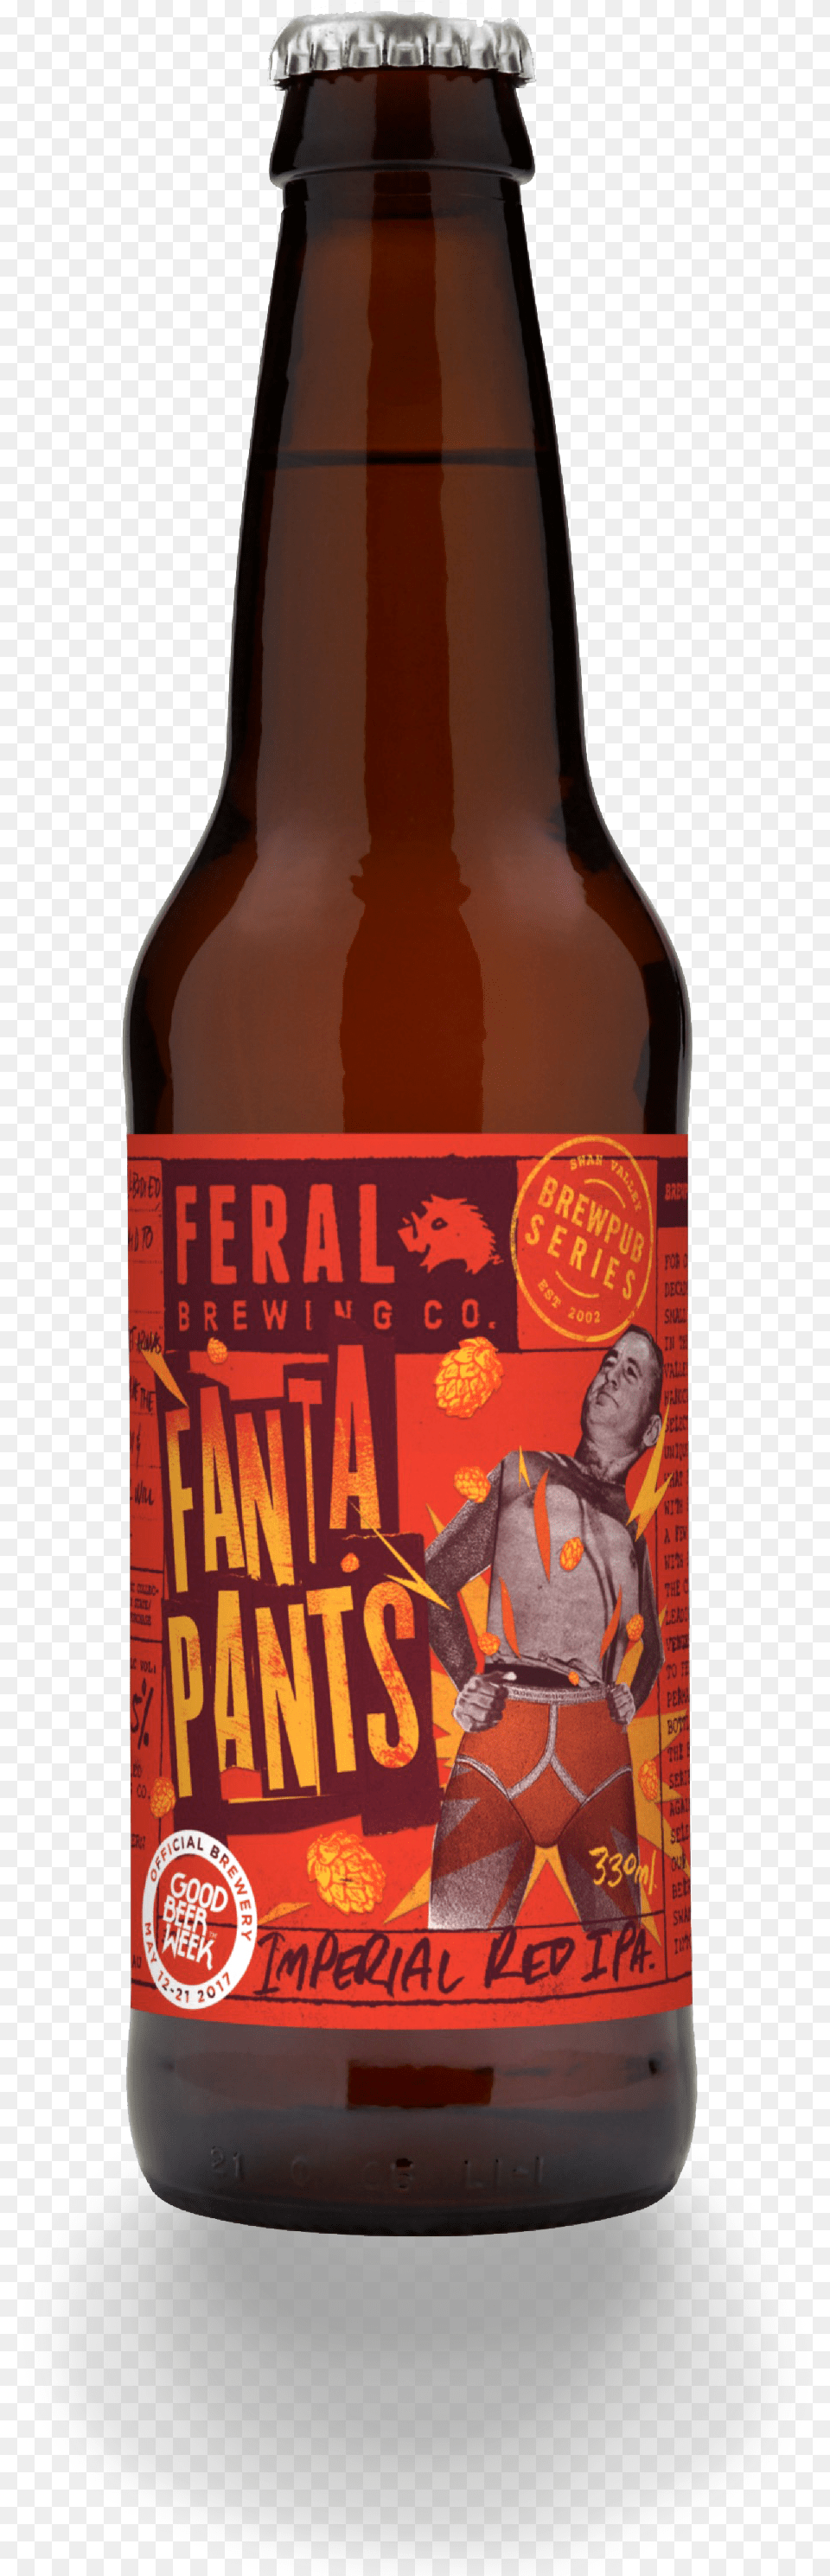 Feral Fanta Pants Artwork Bottle Gbwmock Tiny Rebel Urban Ipa, Alcohol, Beer, Beer Bottle, Beverage Free Png Download